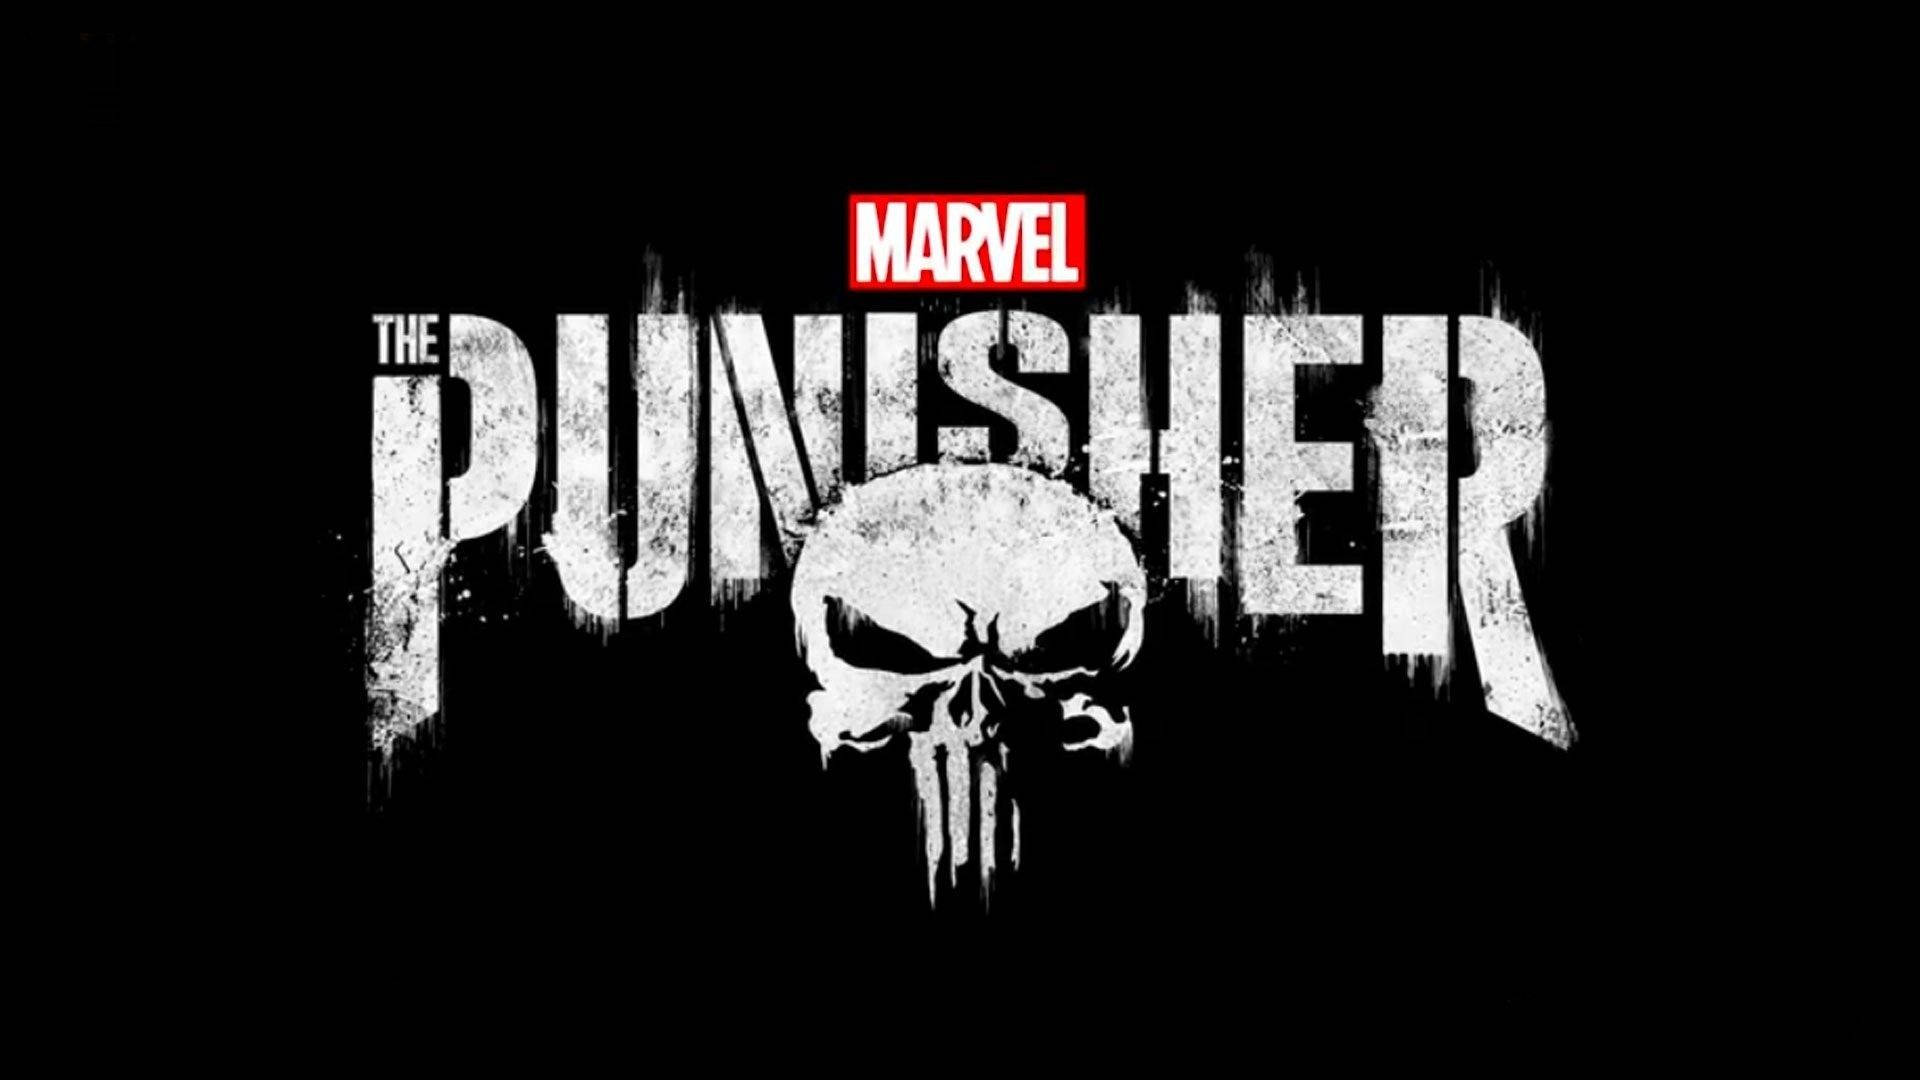 Netflix Marvel The Punisher Title Logo Background